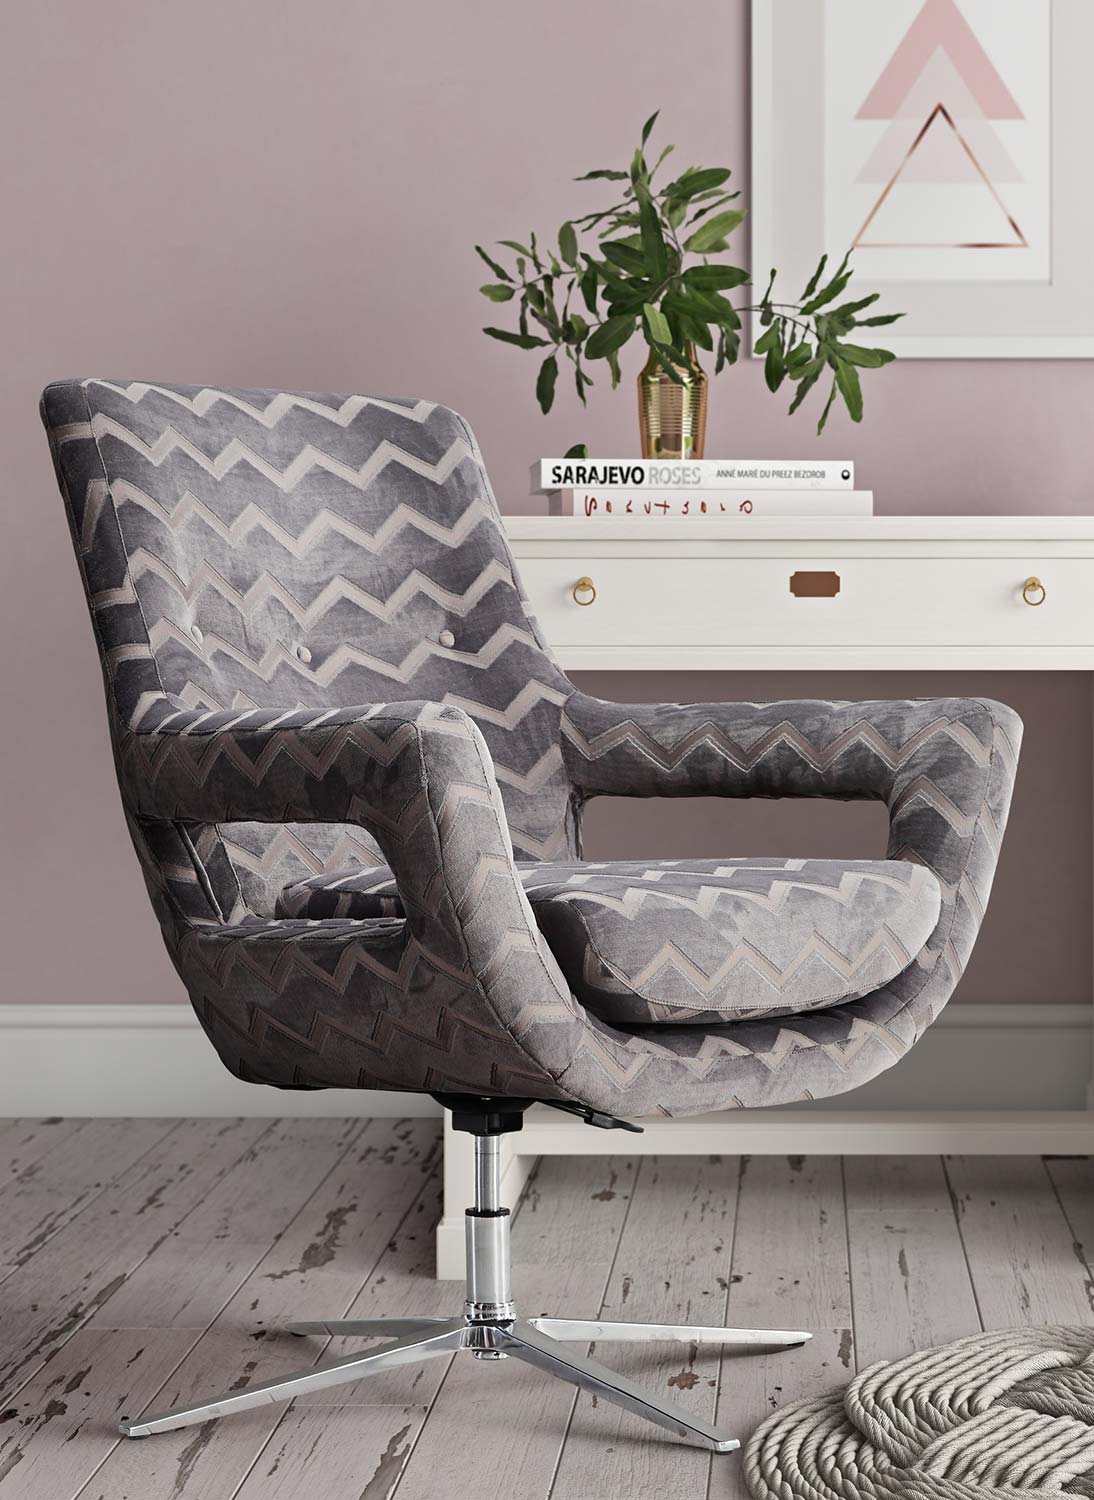 TOV Furniture Fifi Swivel Chair - Grey